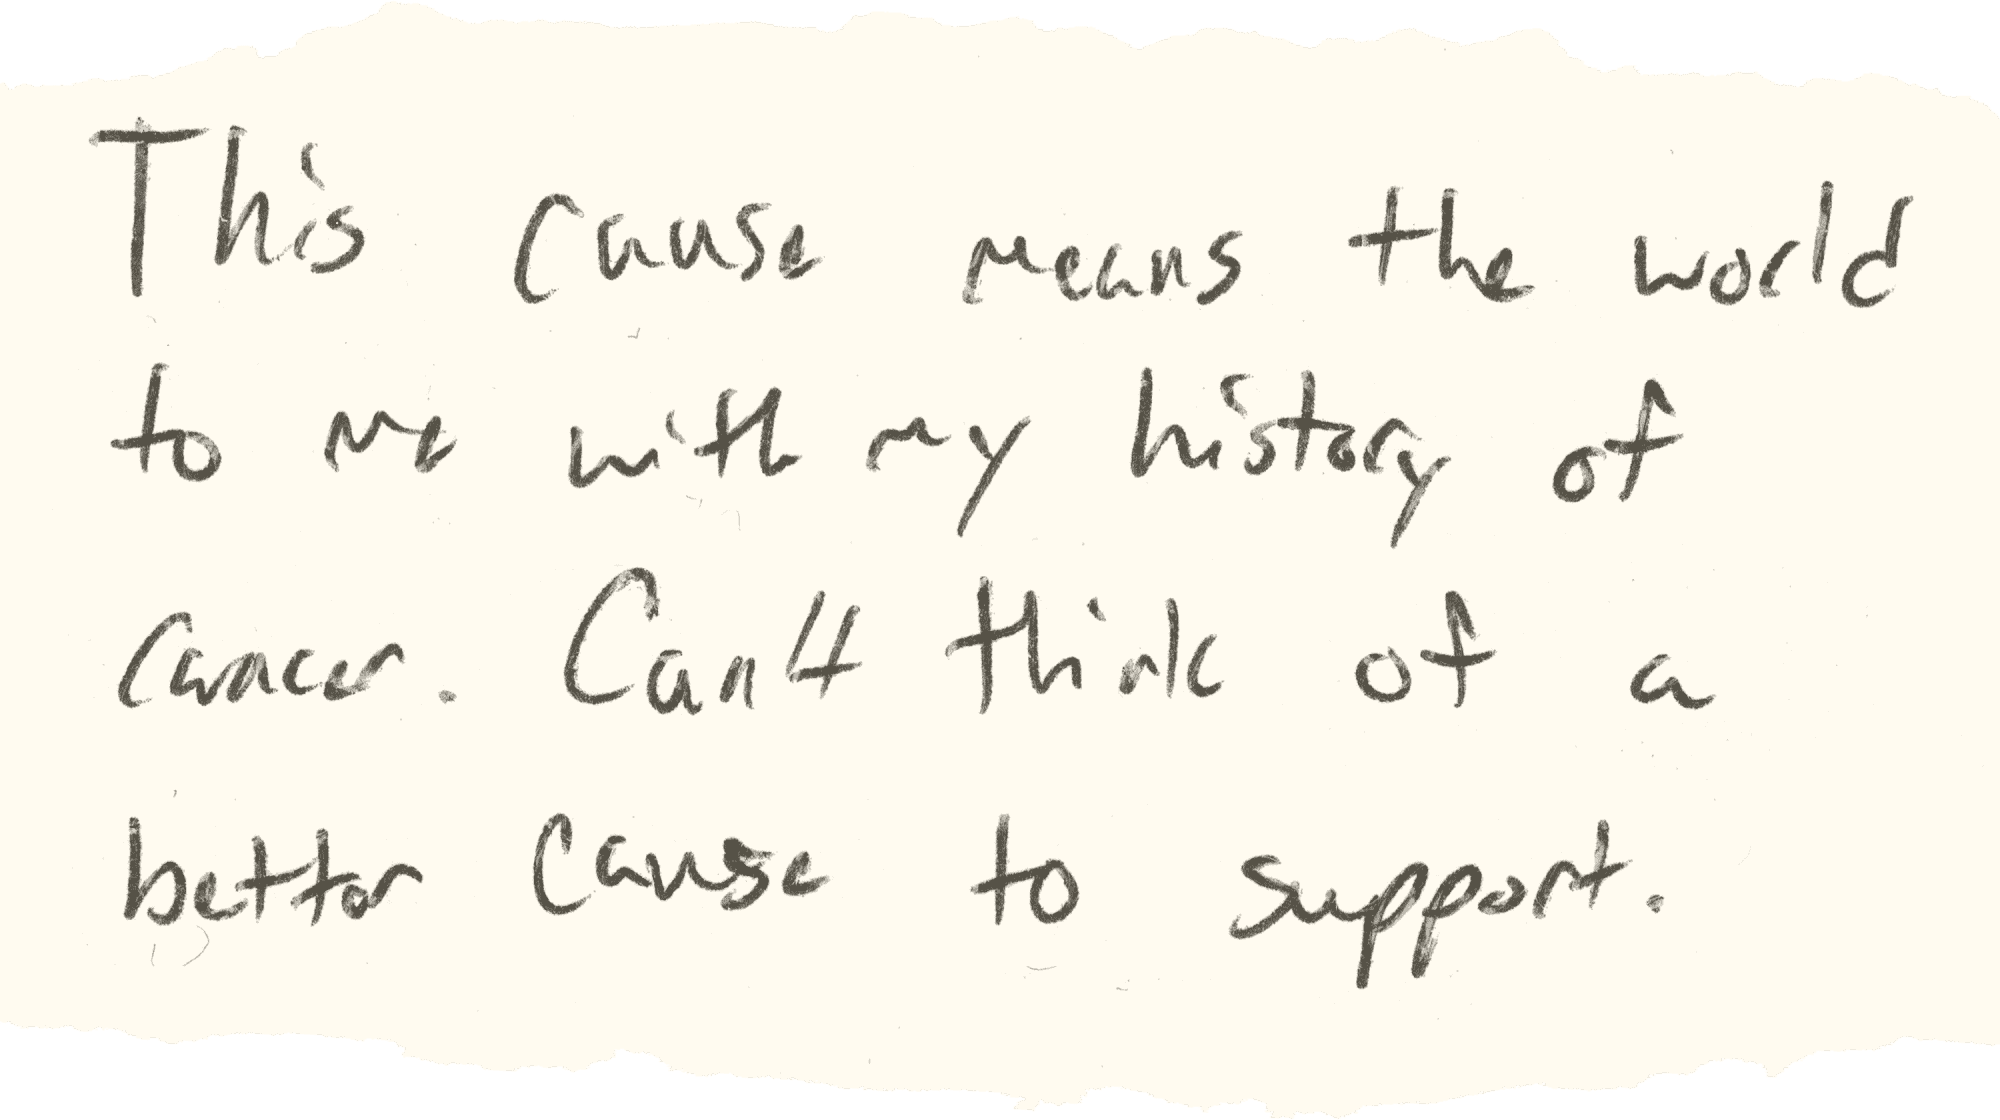 Handschrift: Diese Sache bedeutet mir mit meiner Krebsgeschichte die Welt.  Ich kann mir keinen besseren Grund zur Unterstützung vorstellen.